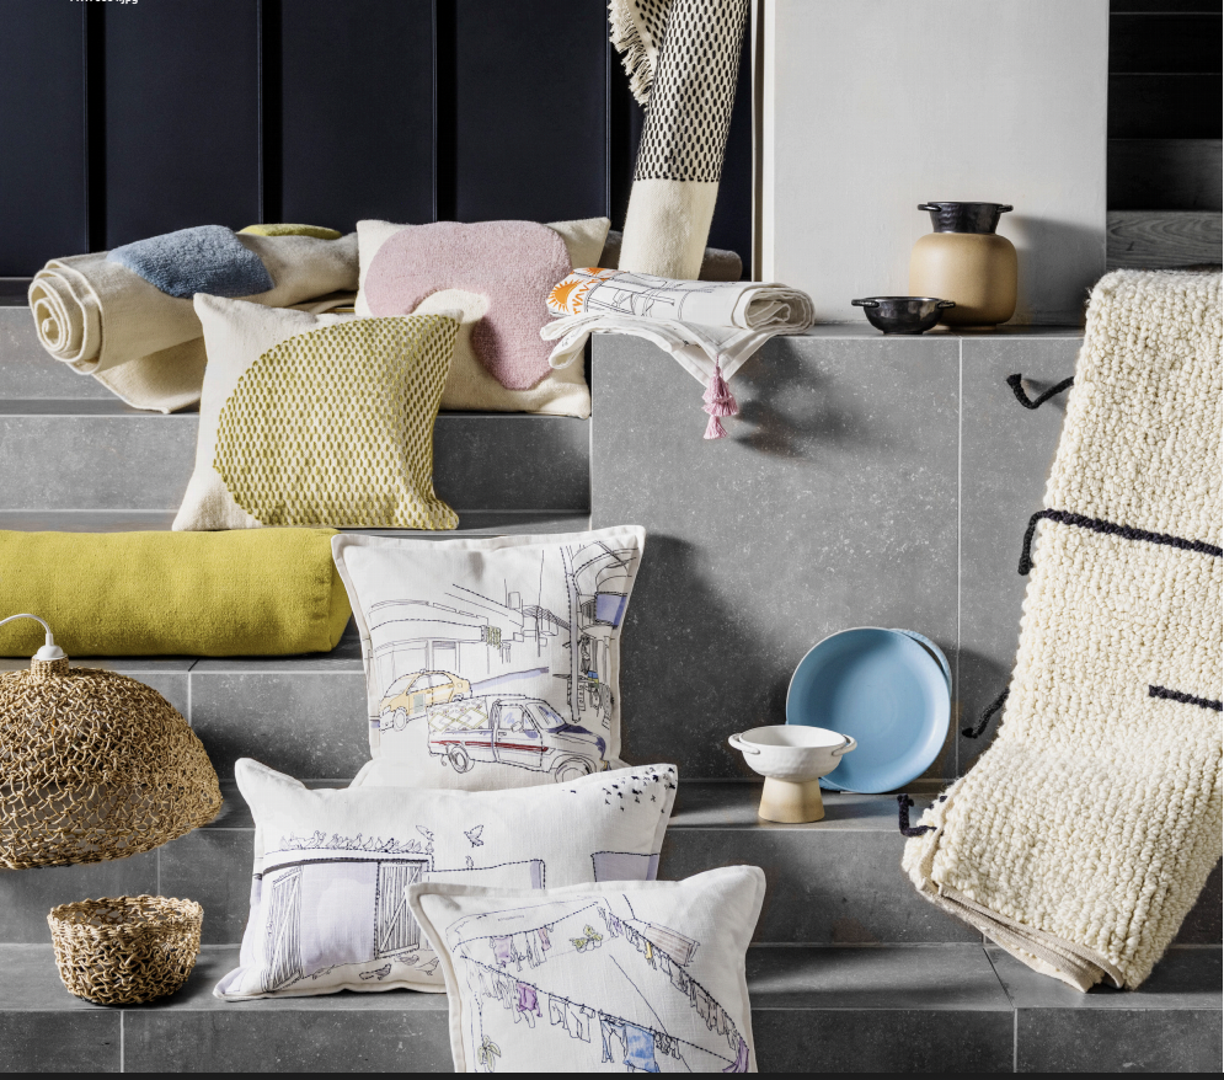 Ikea ovog ljeta nudi kolekciju Lokalt  s ručno rađenim proizvodima. Dostupna će biti u drugoj polovici lipnja